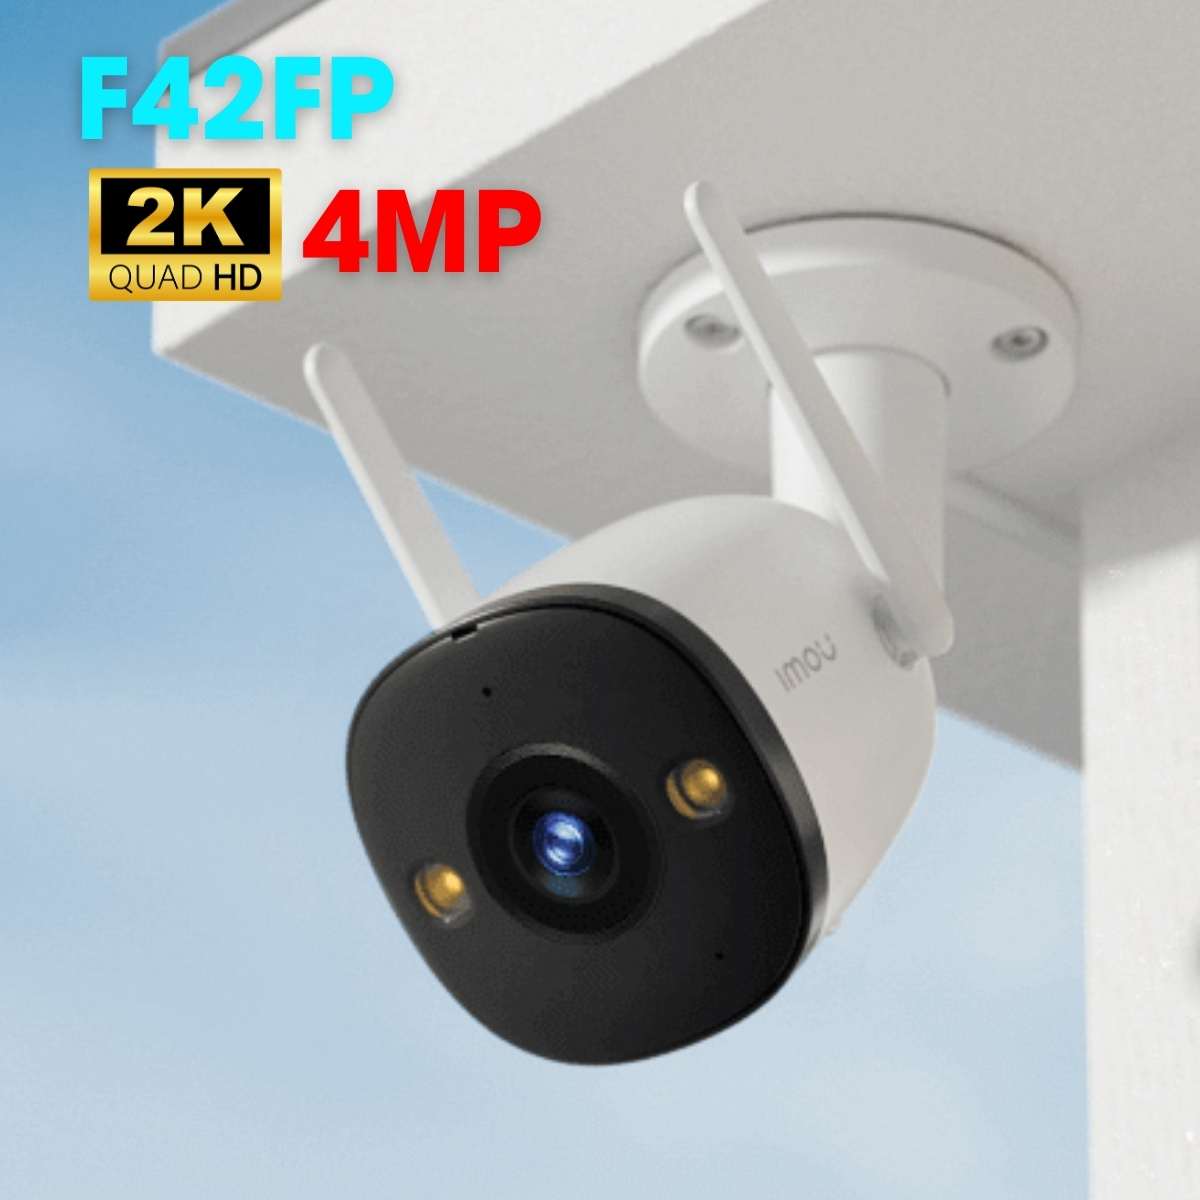 Camera Wifi ngoài trời IMOU IPC-F42FP 4MP tích hợp mic và đèn spotlight, phát hiện chuyển động